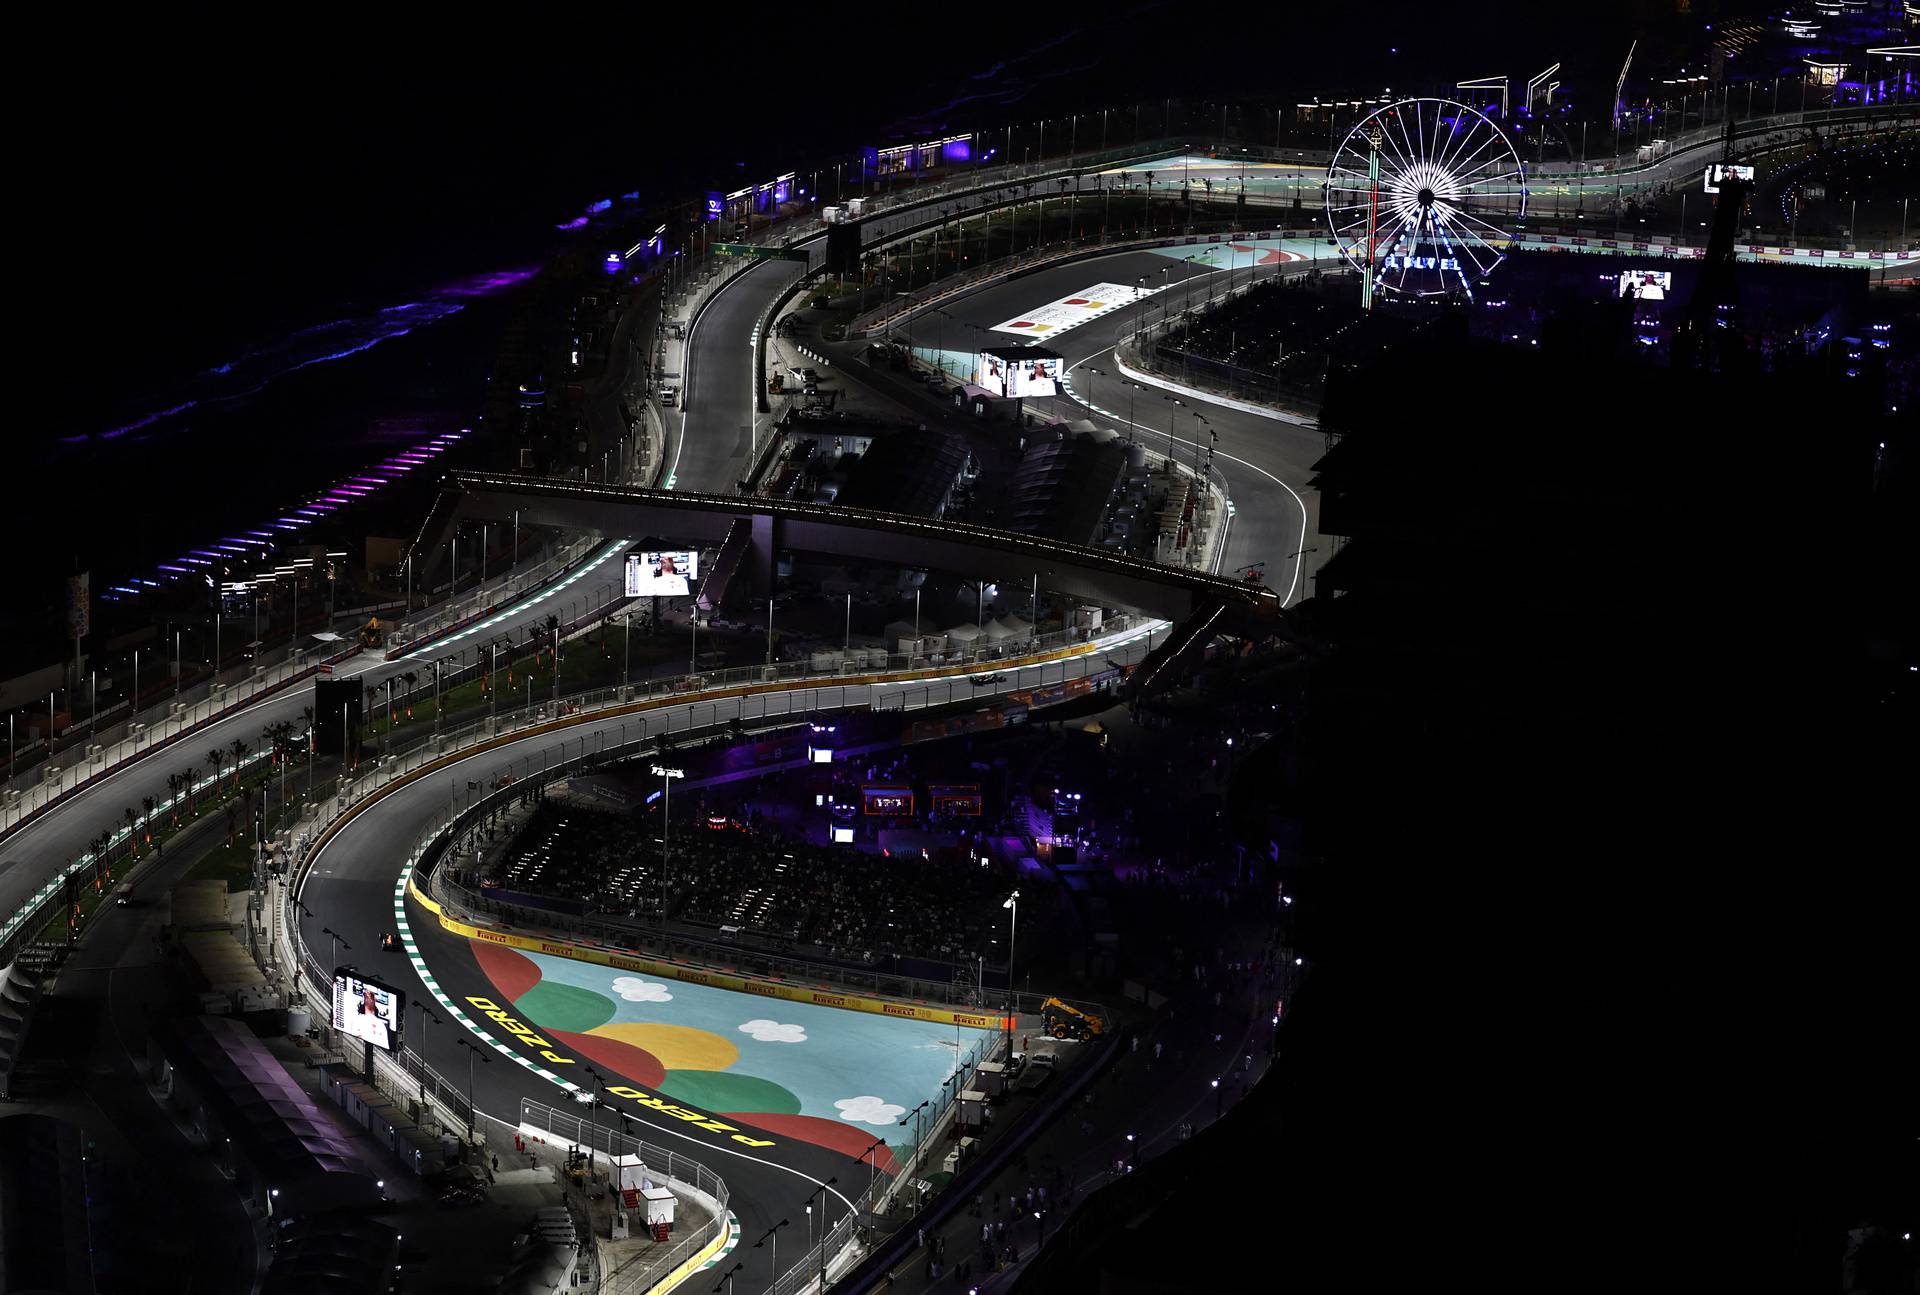 Saudi Arabia Grand Prix